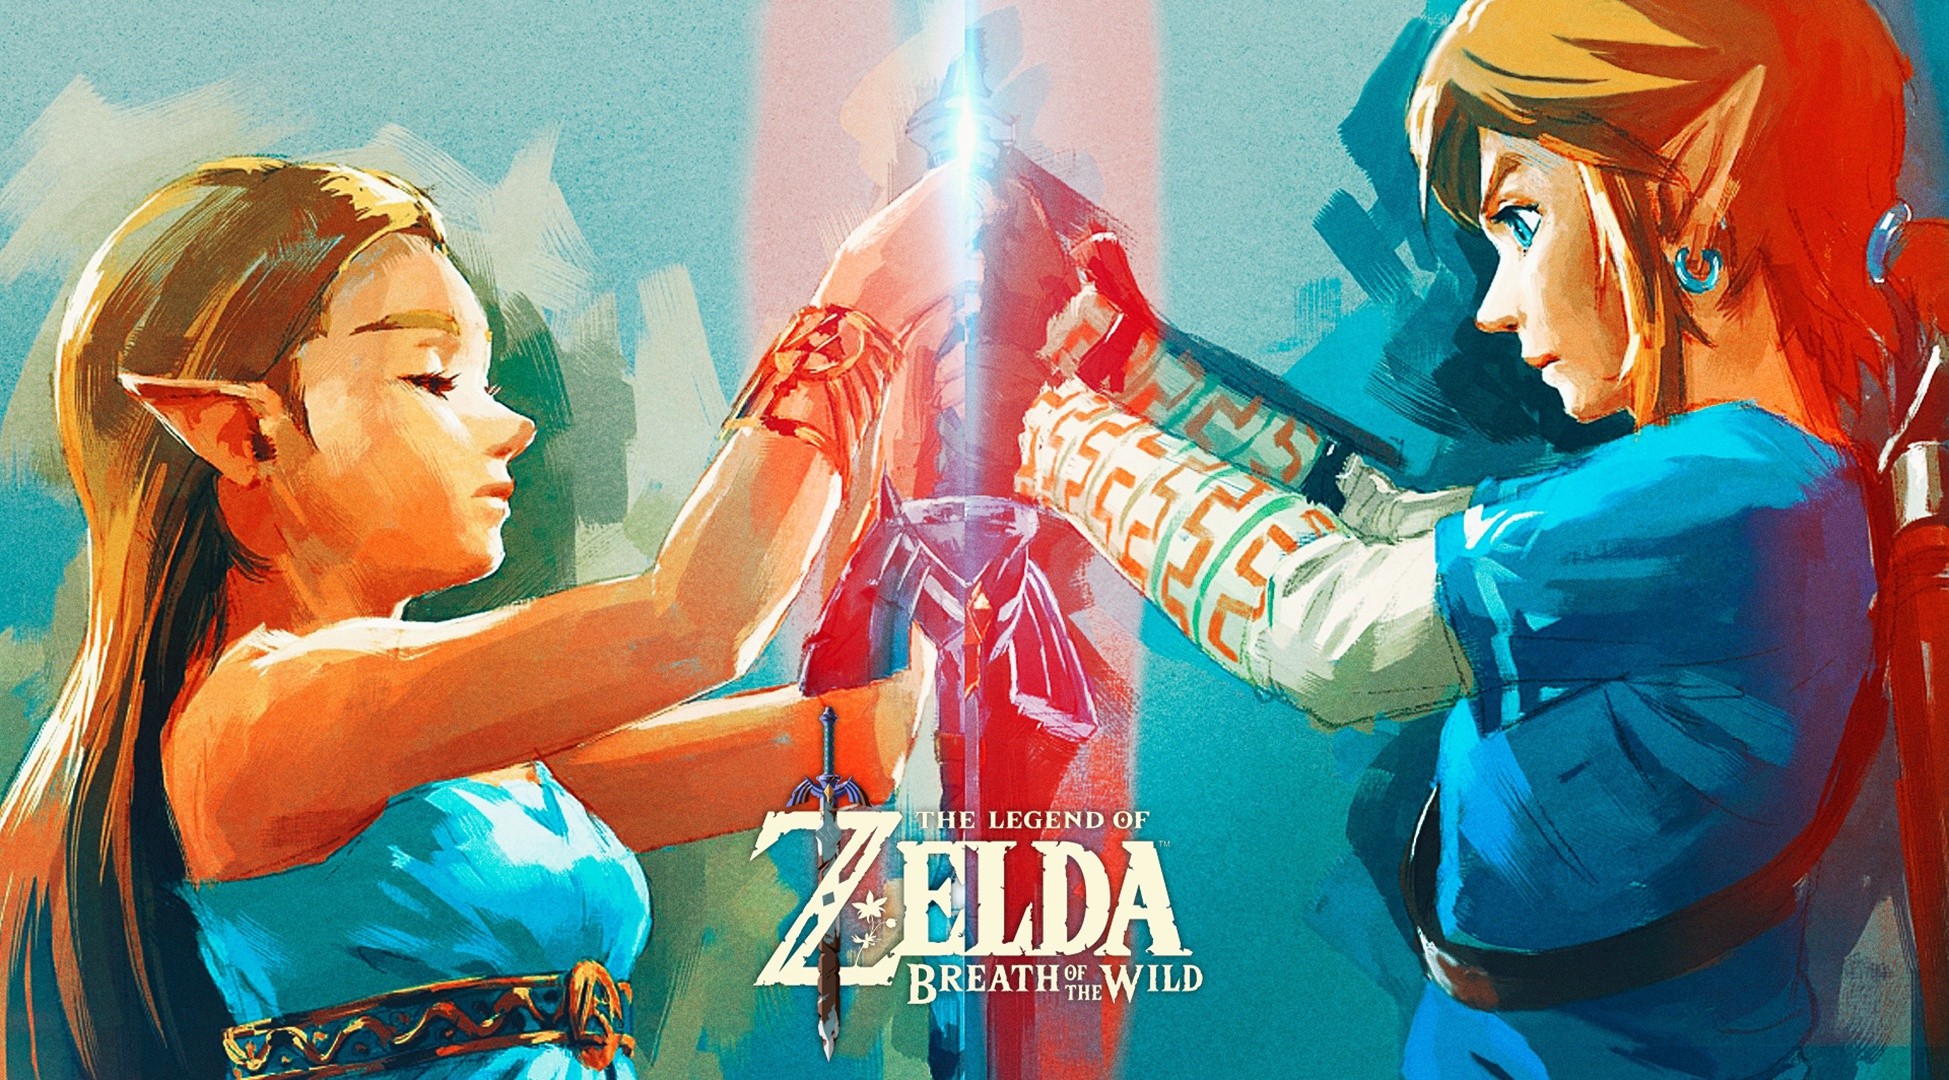 Link Princess Zelda The Legend Of Zelda Breath Of The Wild Nintendo Wallpapers Hd Desktop